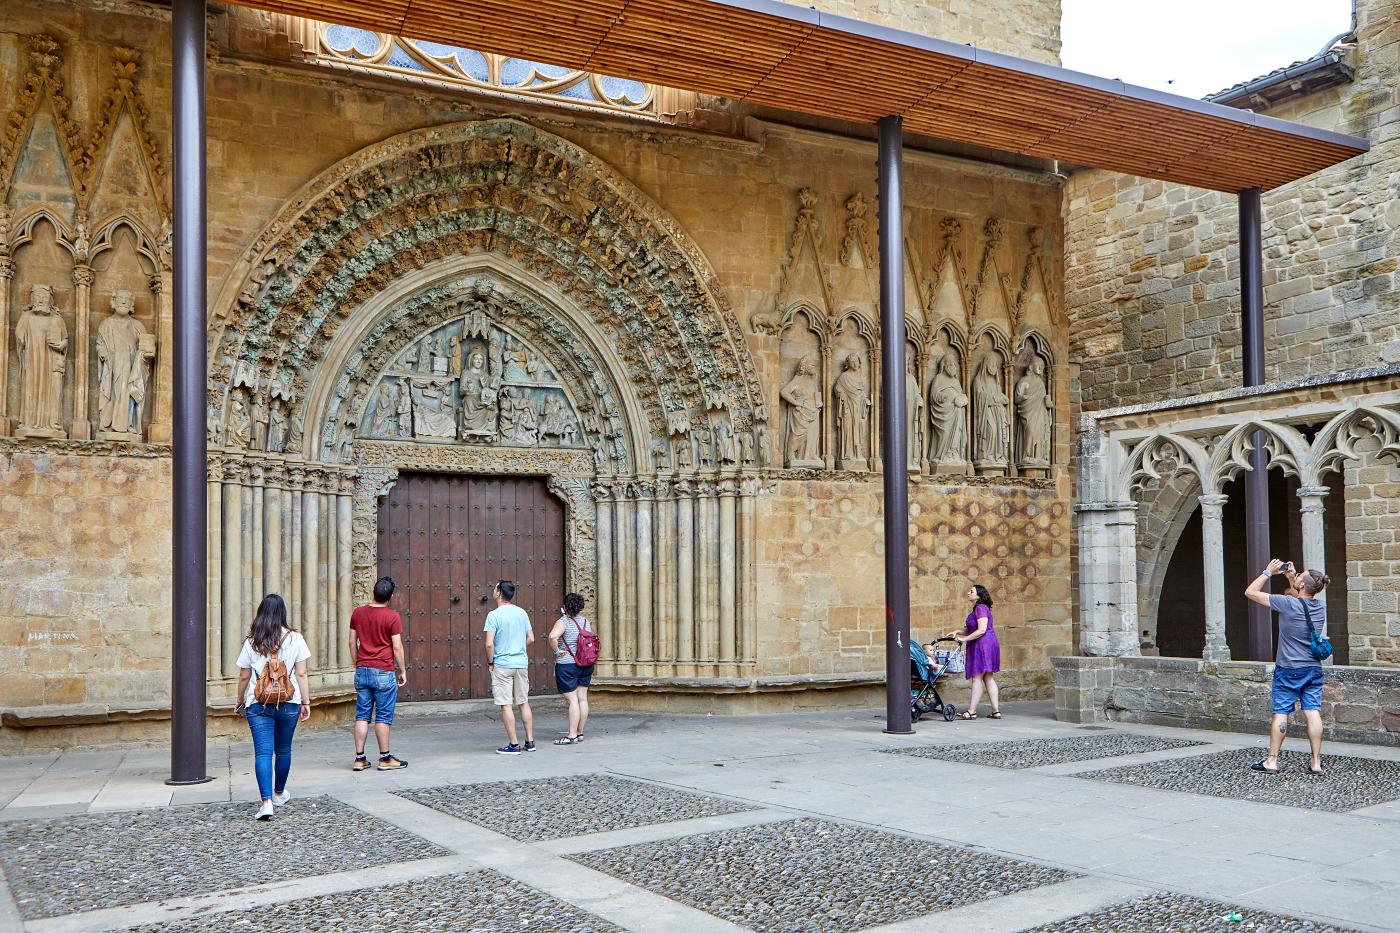 Varias personas observan la fachada ricamente esculpida de la iglesia de San Pedro de Olite